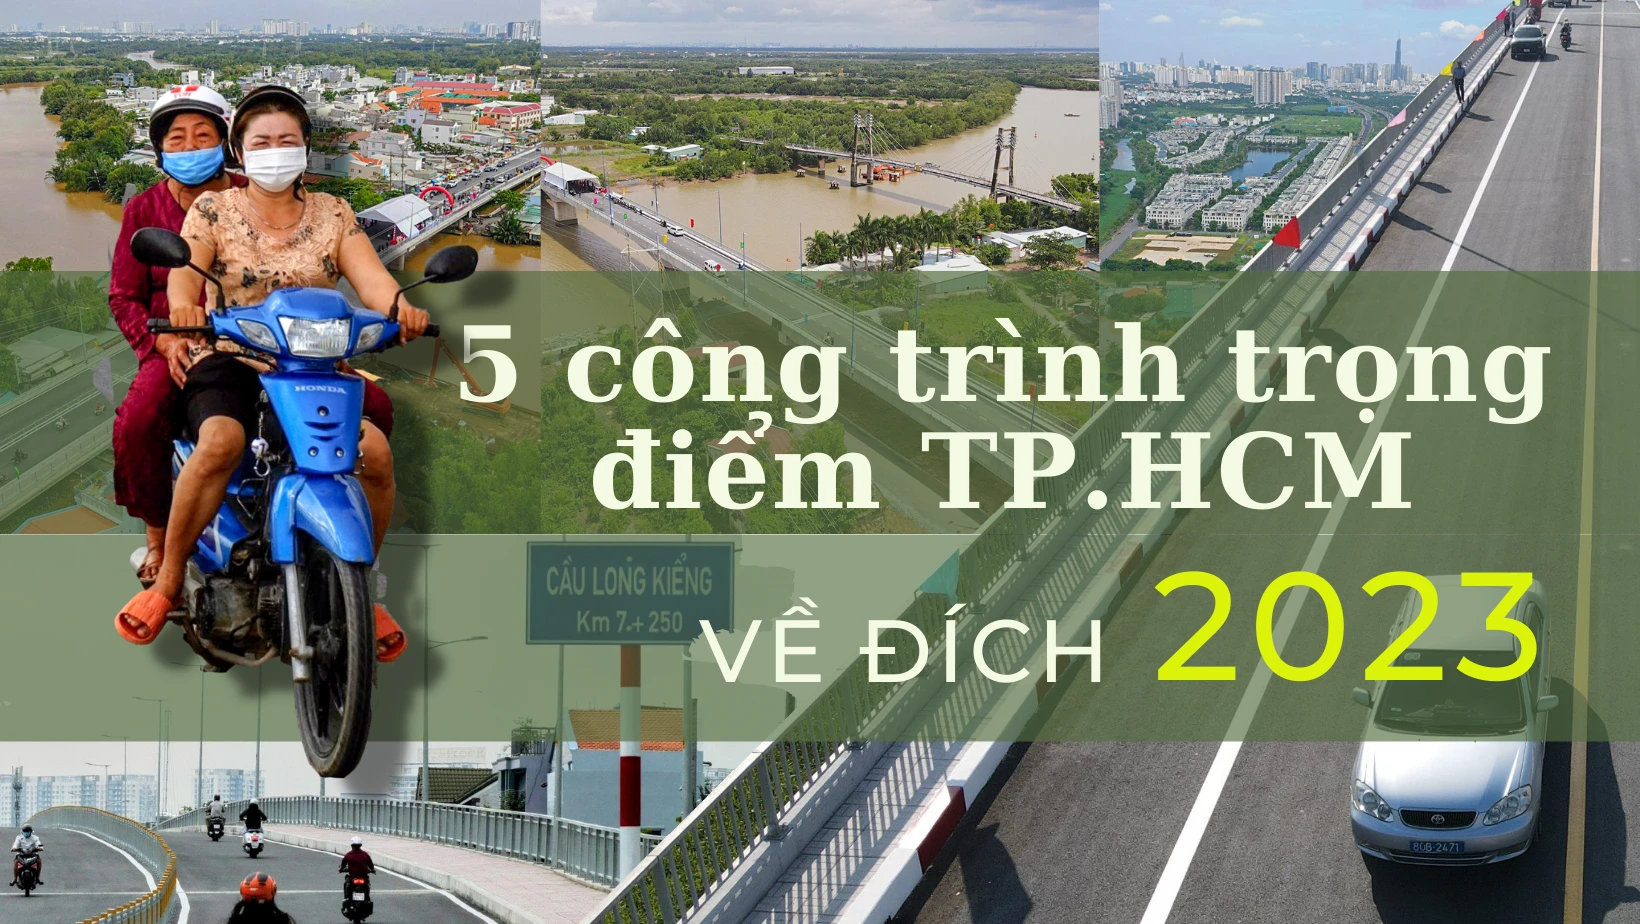 5 công trình trọng điểm ở TP.HCM "về đích" trong năm 2023 mở ra nhiều lợi thế cho TP.HCM phát triển kinh tế - xã hội, điển hình như cầu Long Kiểng, đường song hành cao tốc TP.HCM - Long Thành.